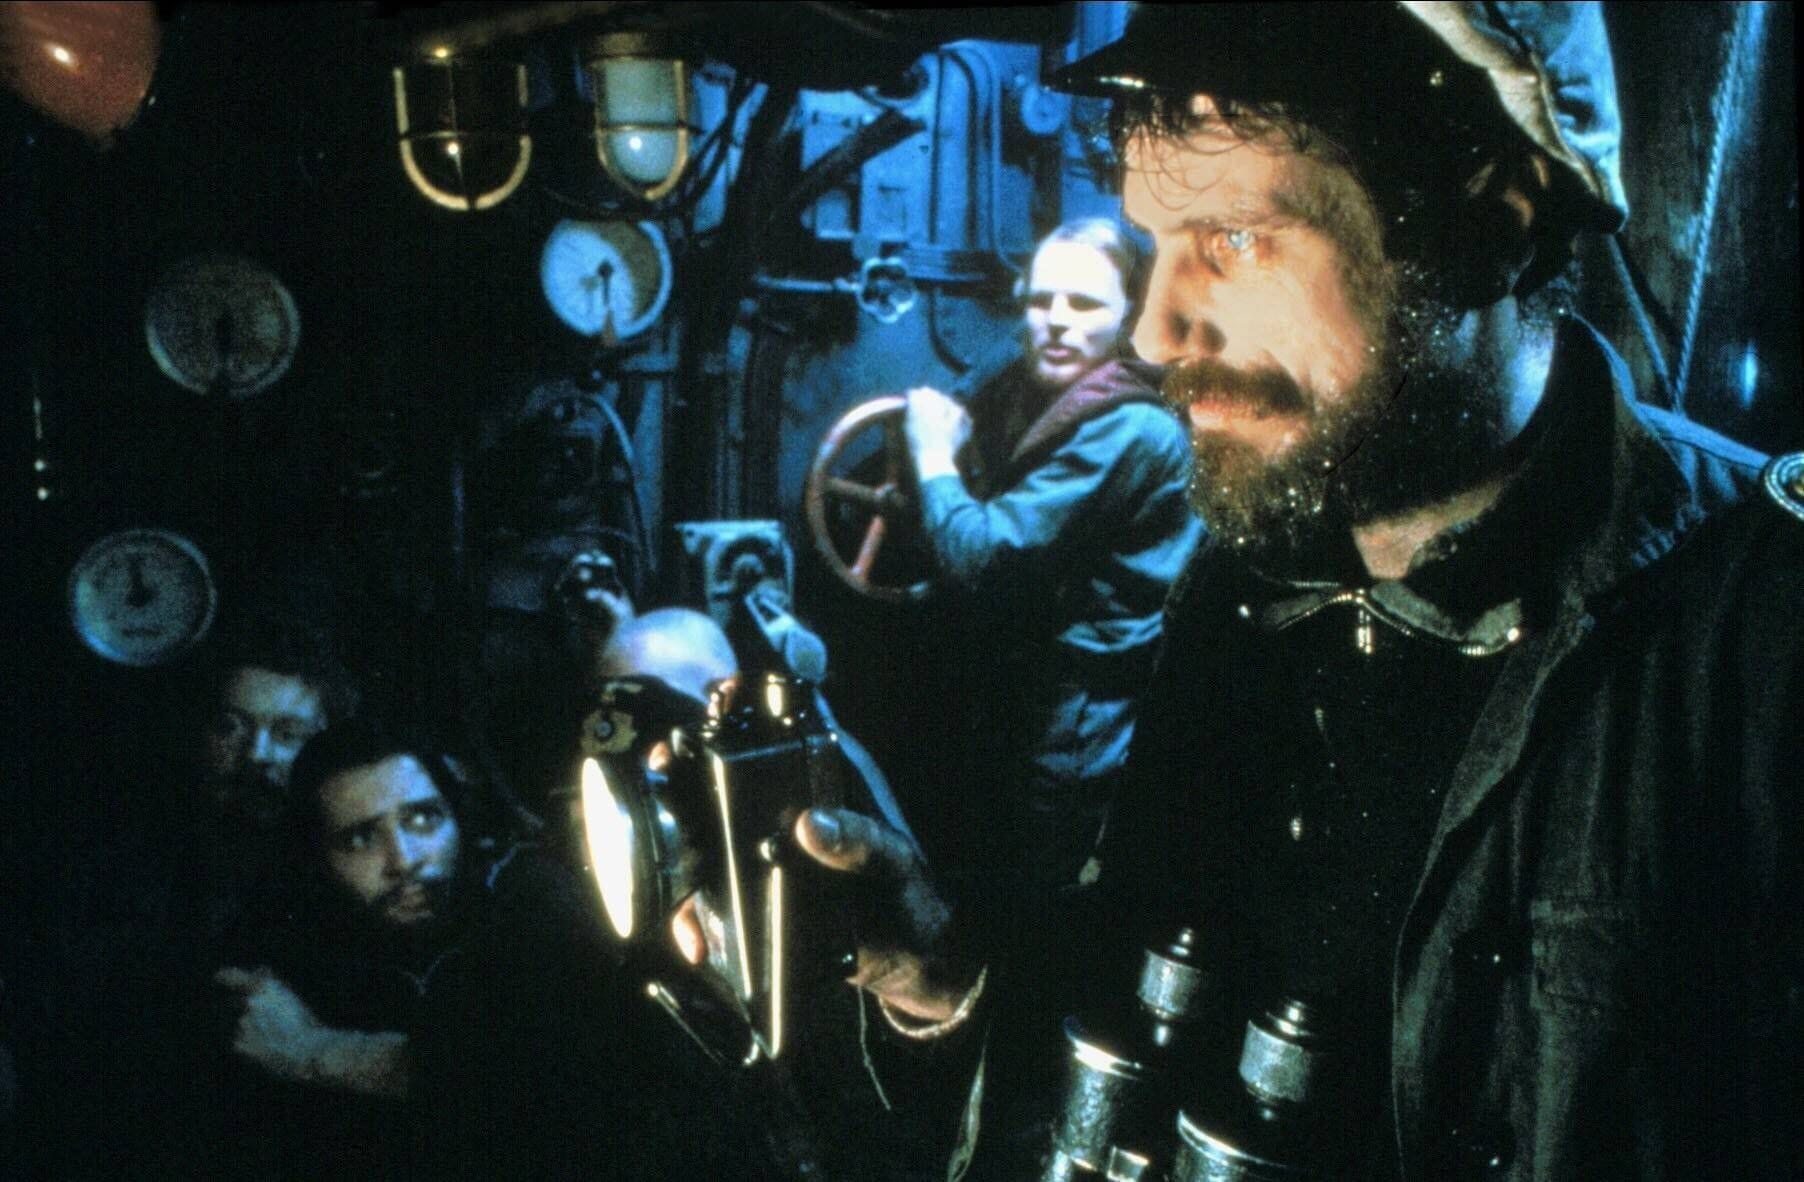 "Das Boot" mit Jürgen Prochnow in der Hauptrolle, gelang Wolfgang Petersen 1981 der internationale Durchbruch. Der Film war für sechs Oscars nominiert, gewann zwei.